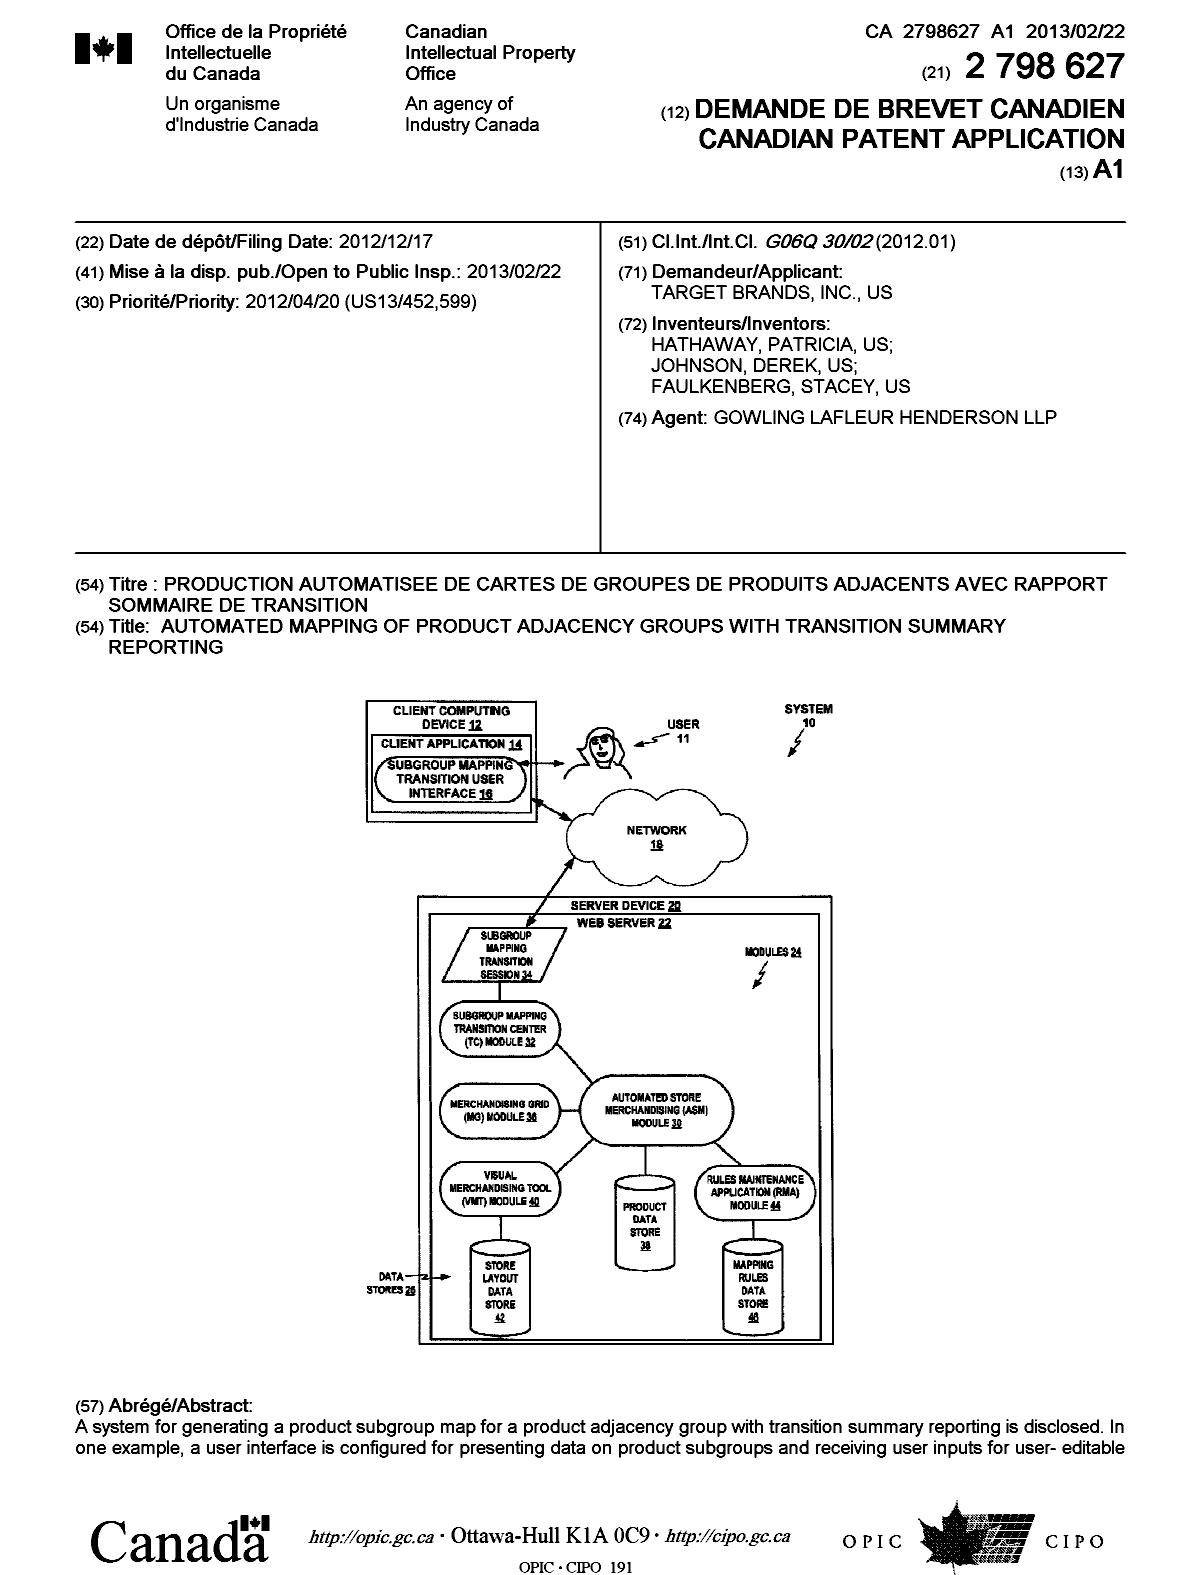 Document de brevet canadien 2798627. Page couverture 20130305. Image 1 de 2